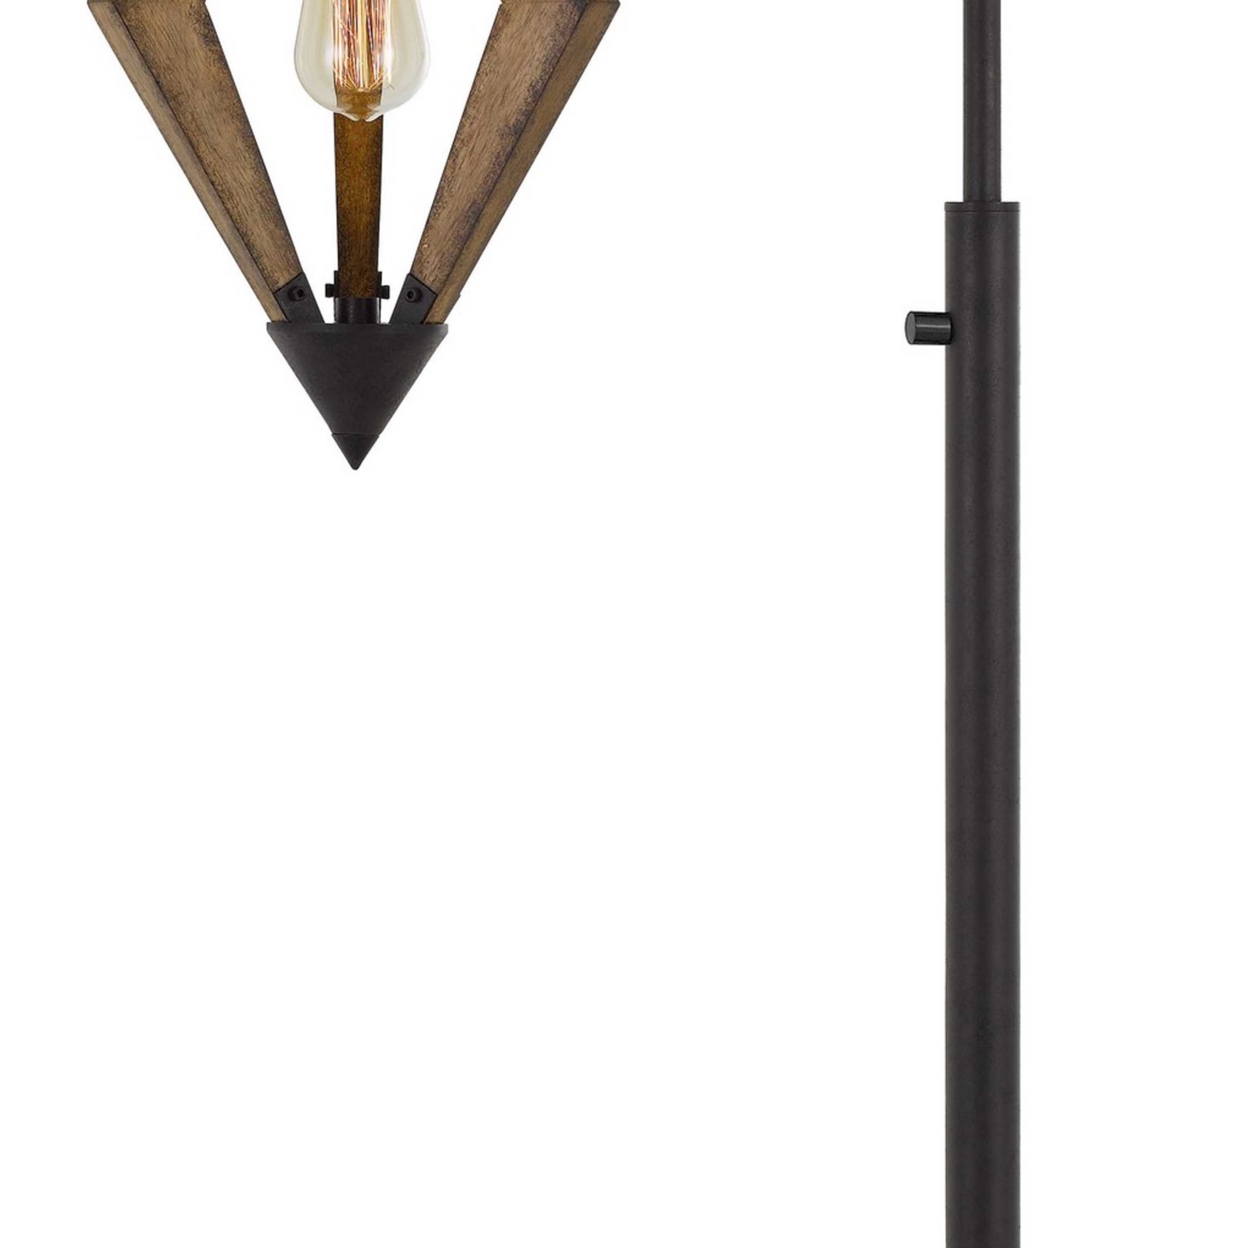 Tubular Metal Downbridge Floor Lamp With Wooden Accents, Black- Saltoro Sherpi